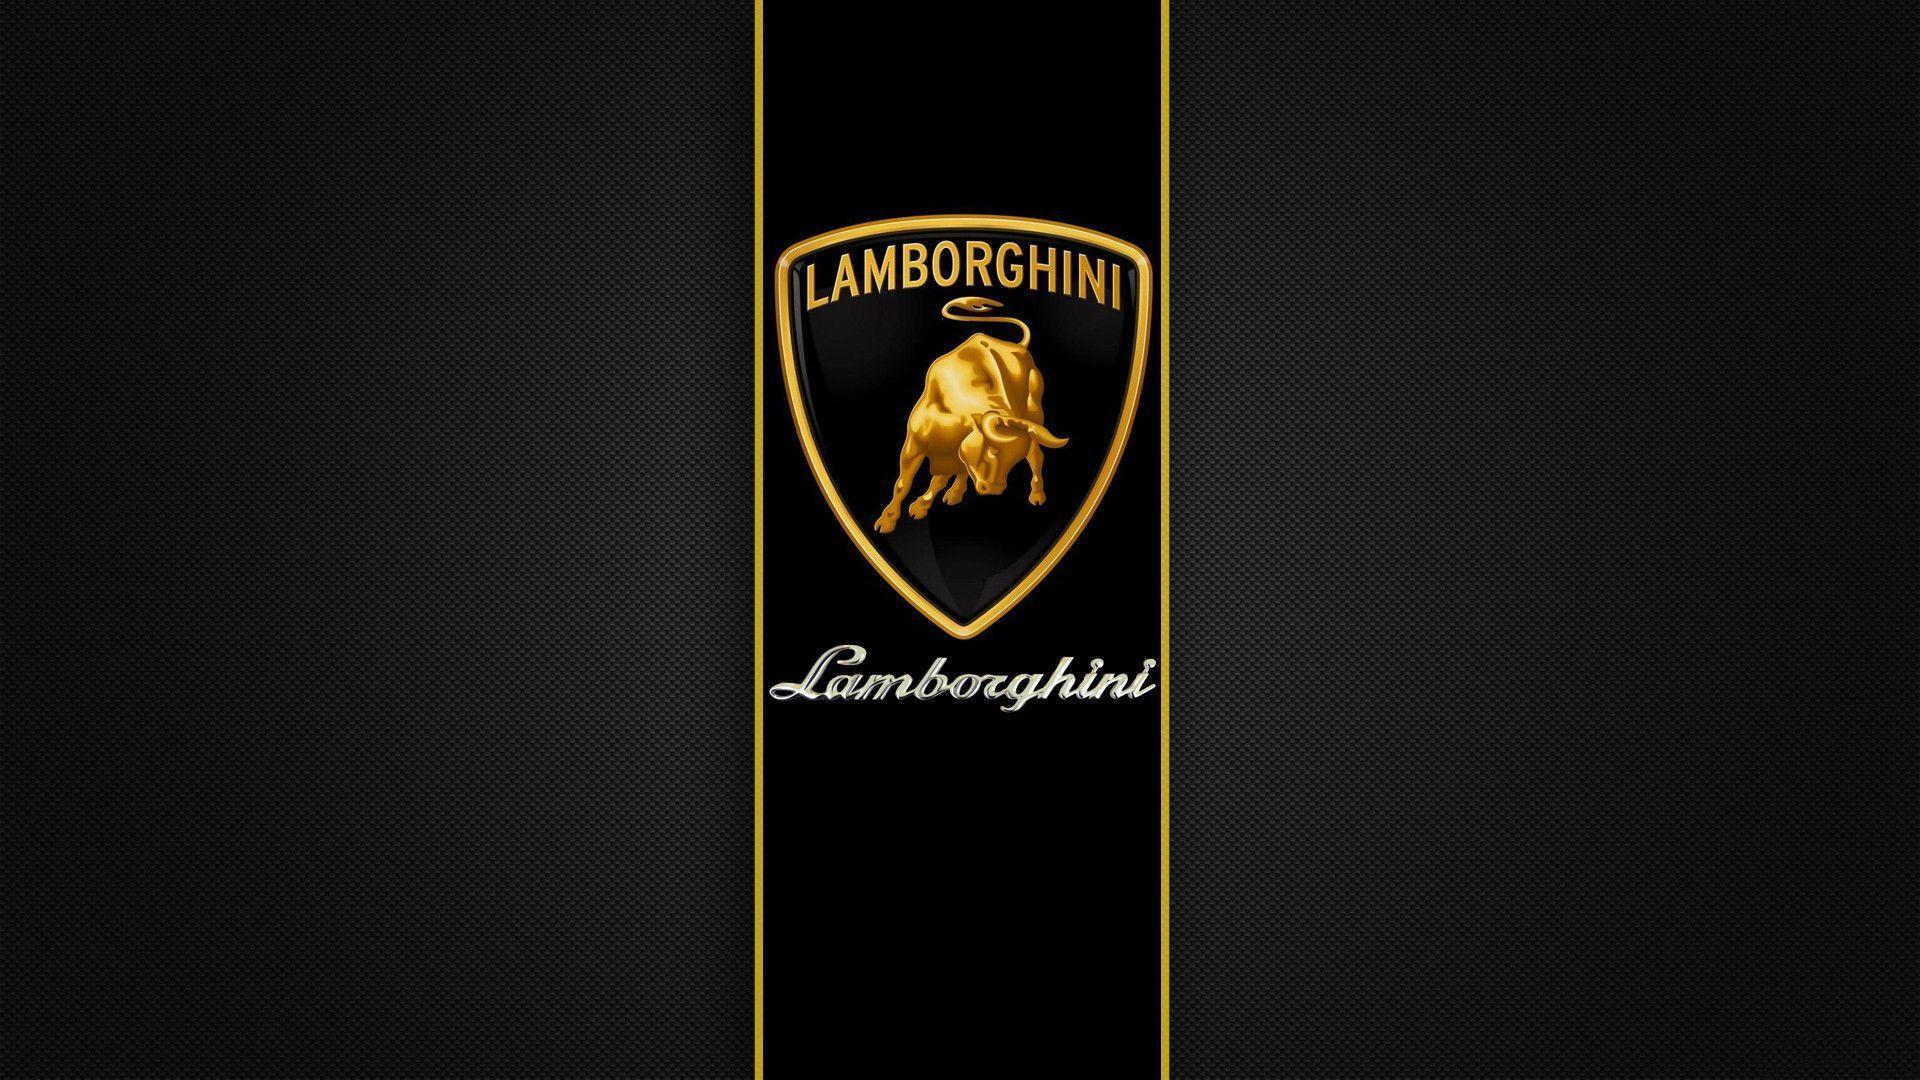 Lamborghini Urus- Technical Specifications, Pictures, Videos